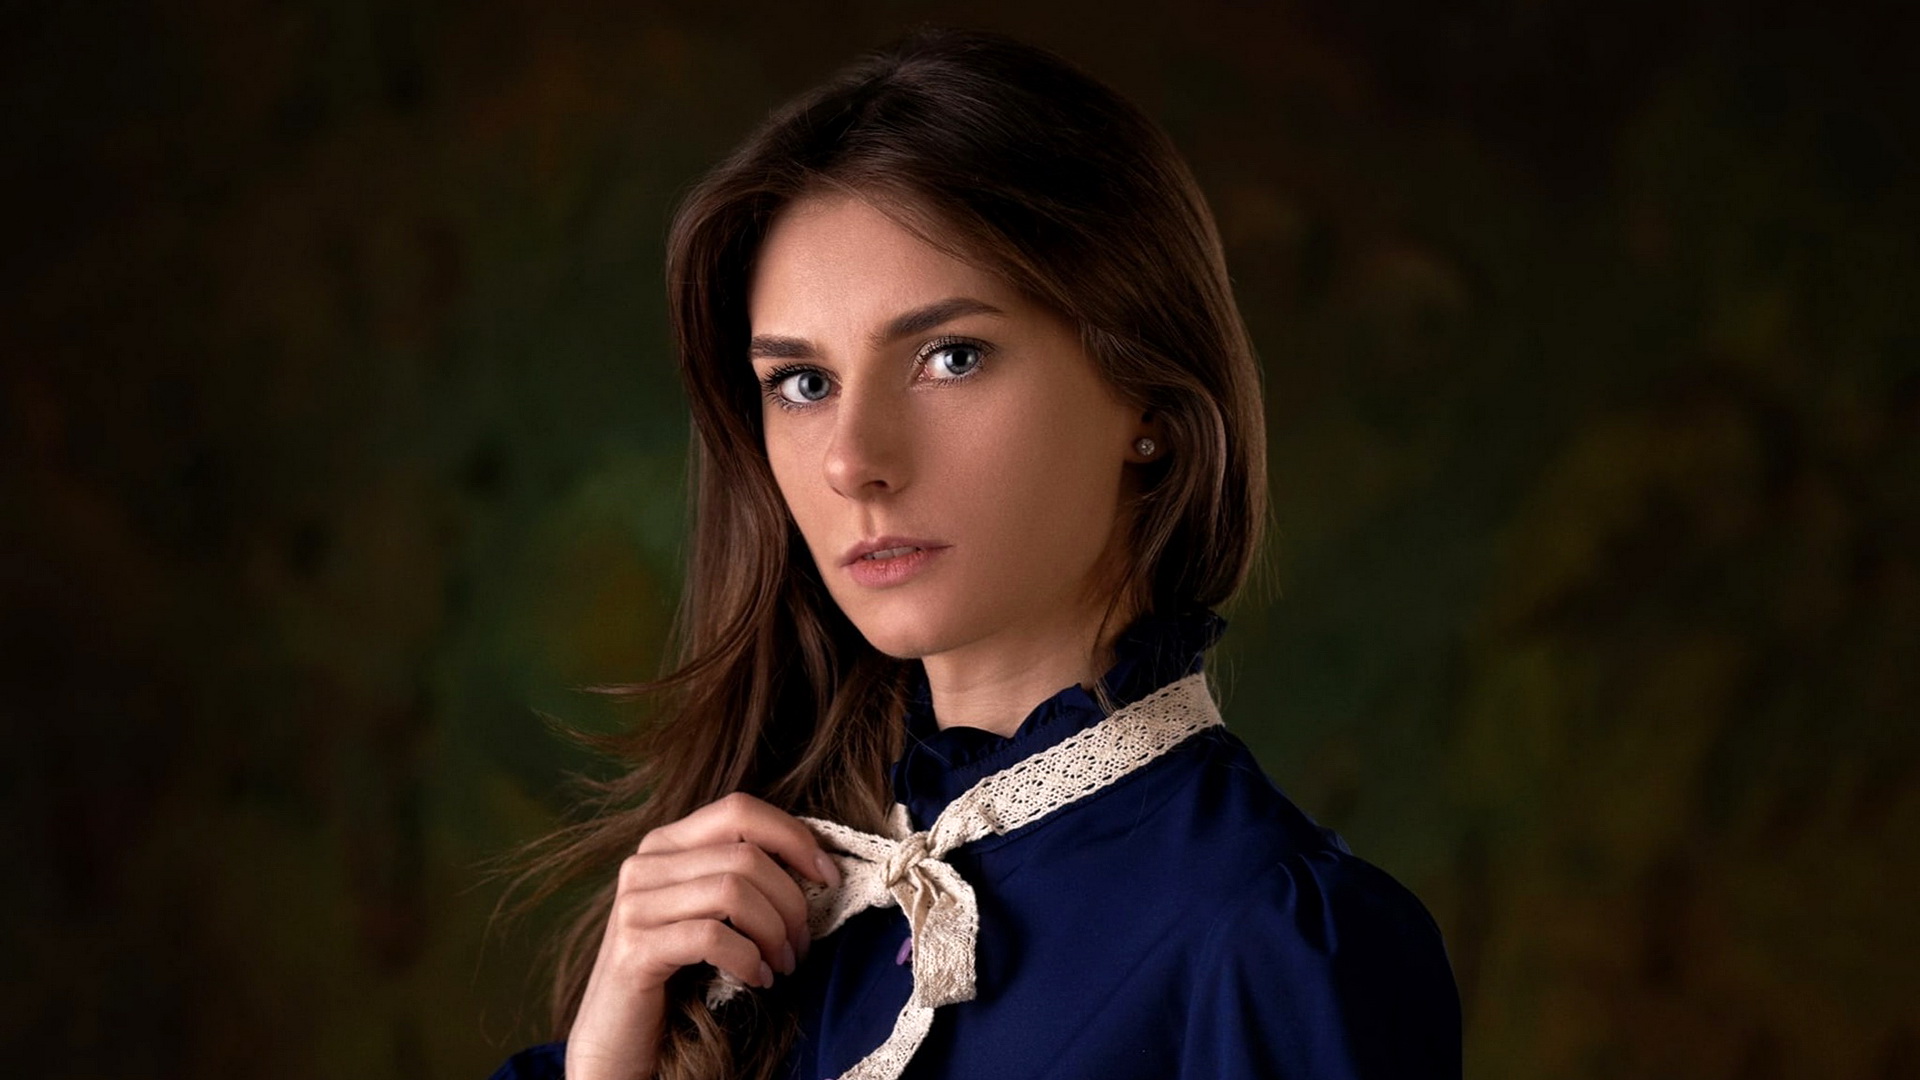 Бесплатное фото Портрет анастасии орловской в синем платье